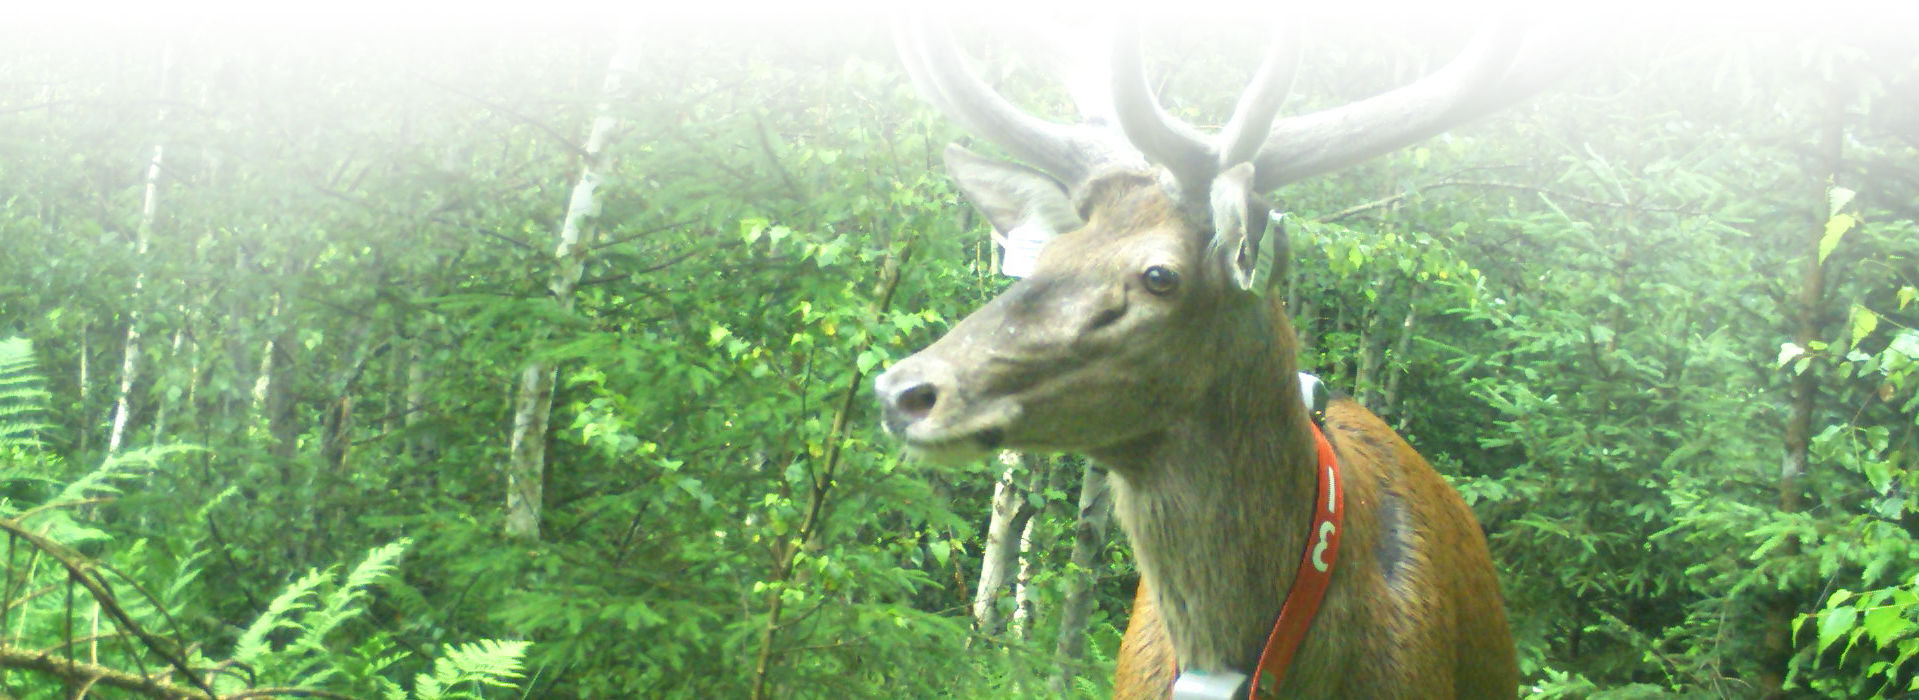 Ein Rothirsch mit einem großen Geweih steht in einem hellgrünen Wald. Um seinen Hals hängt ein rotes Band mit einem Sender.